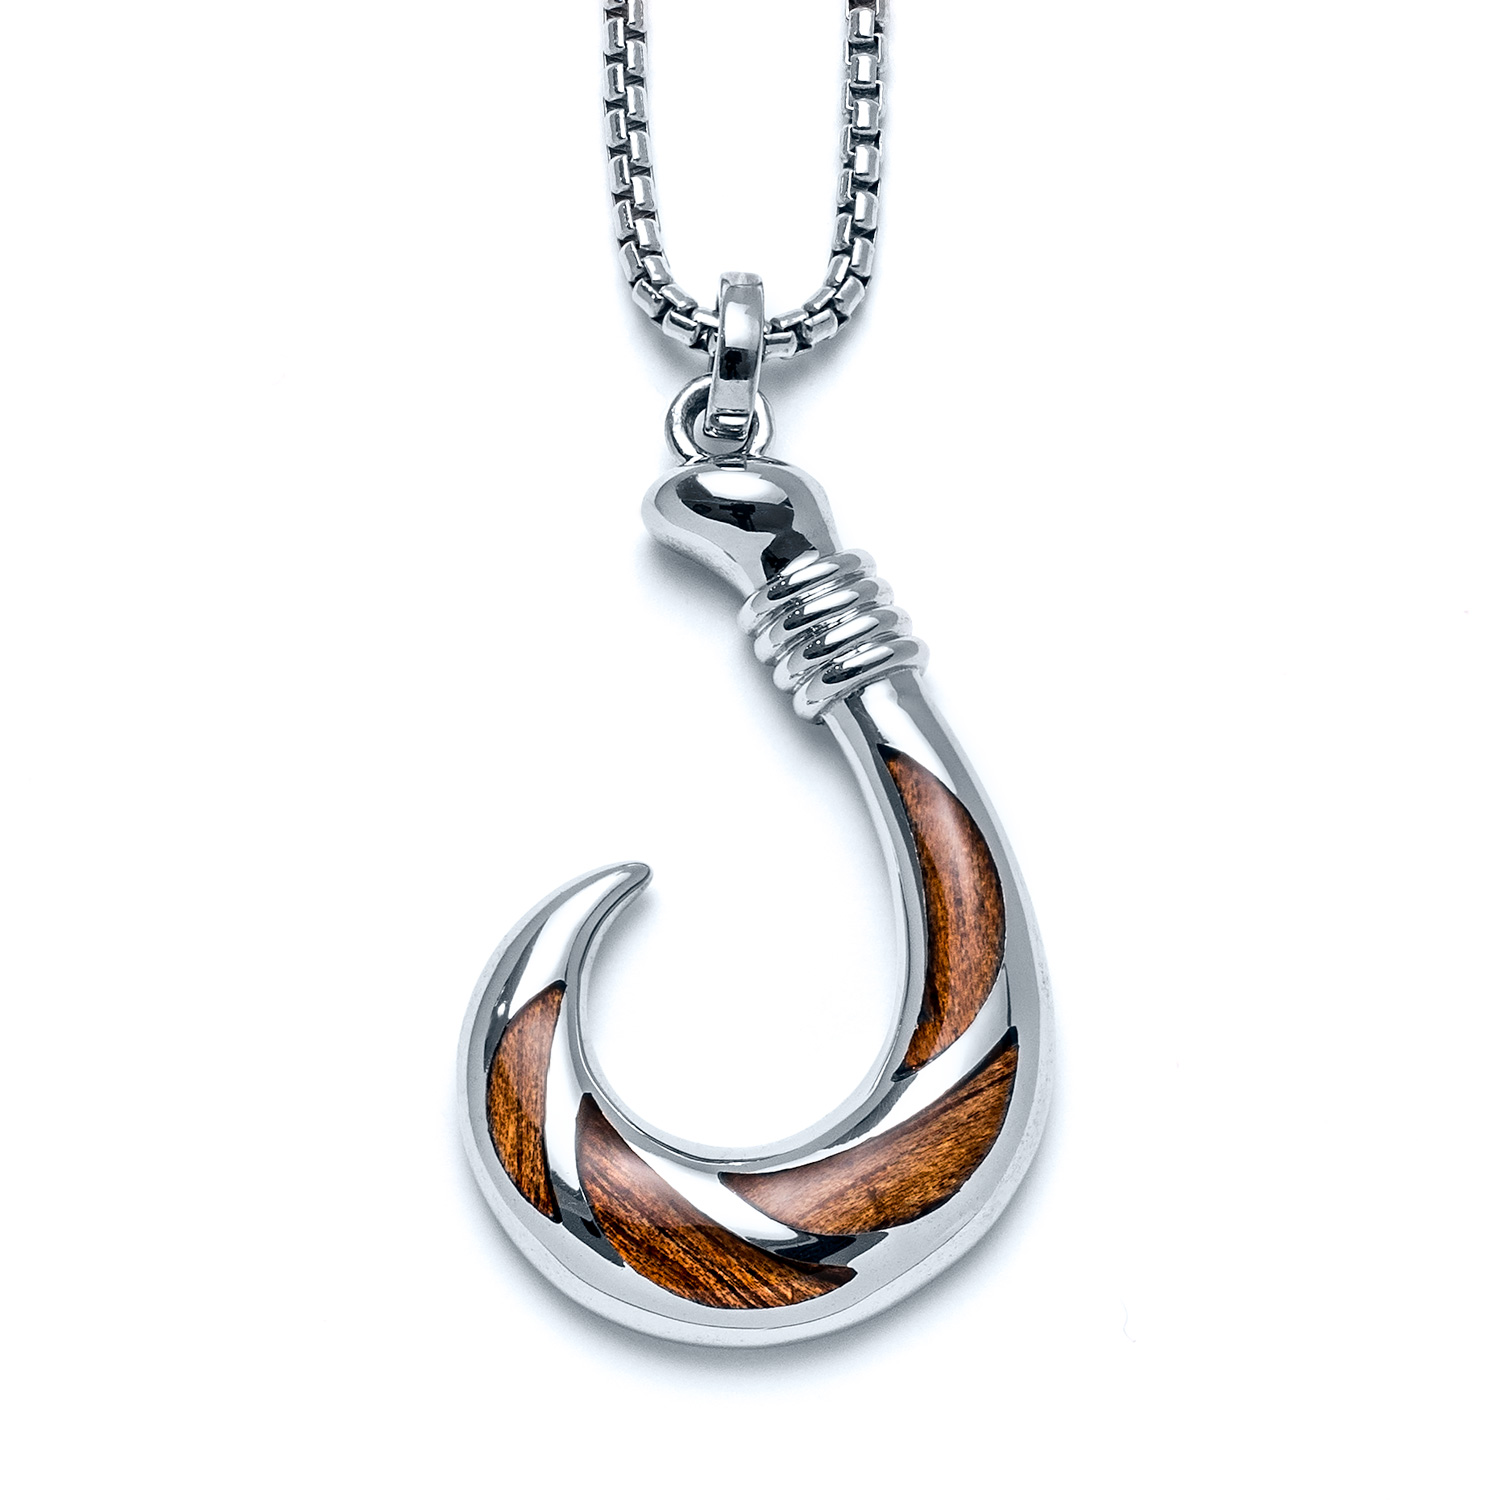 Koa Wood Fish Hook Large Necklace